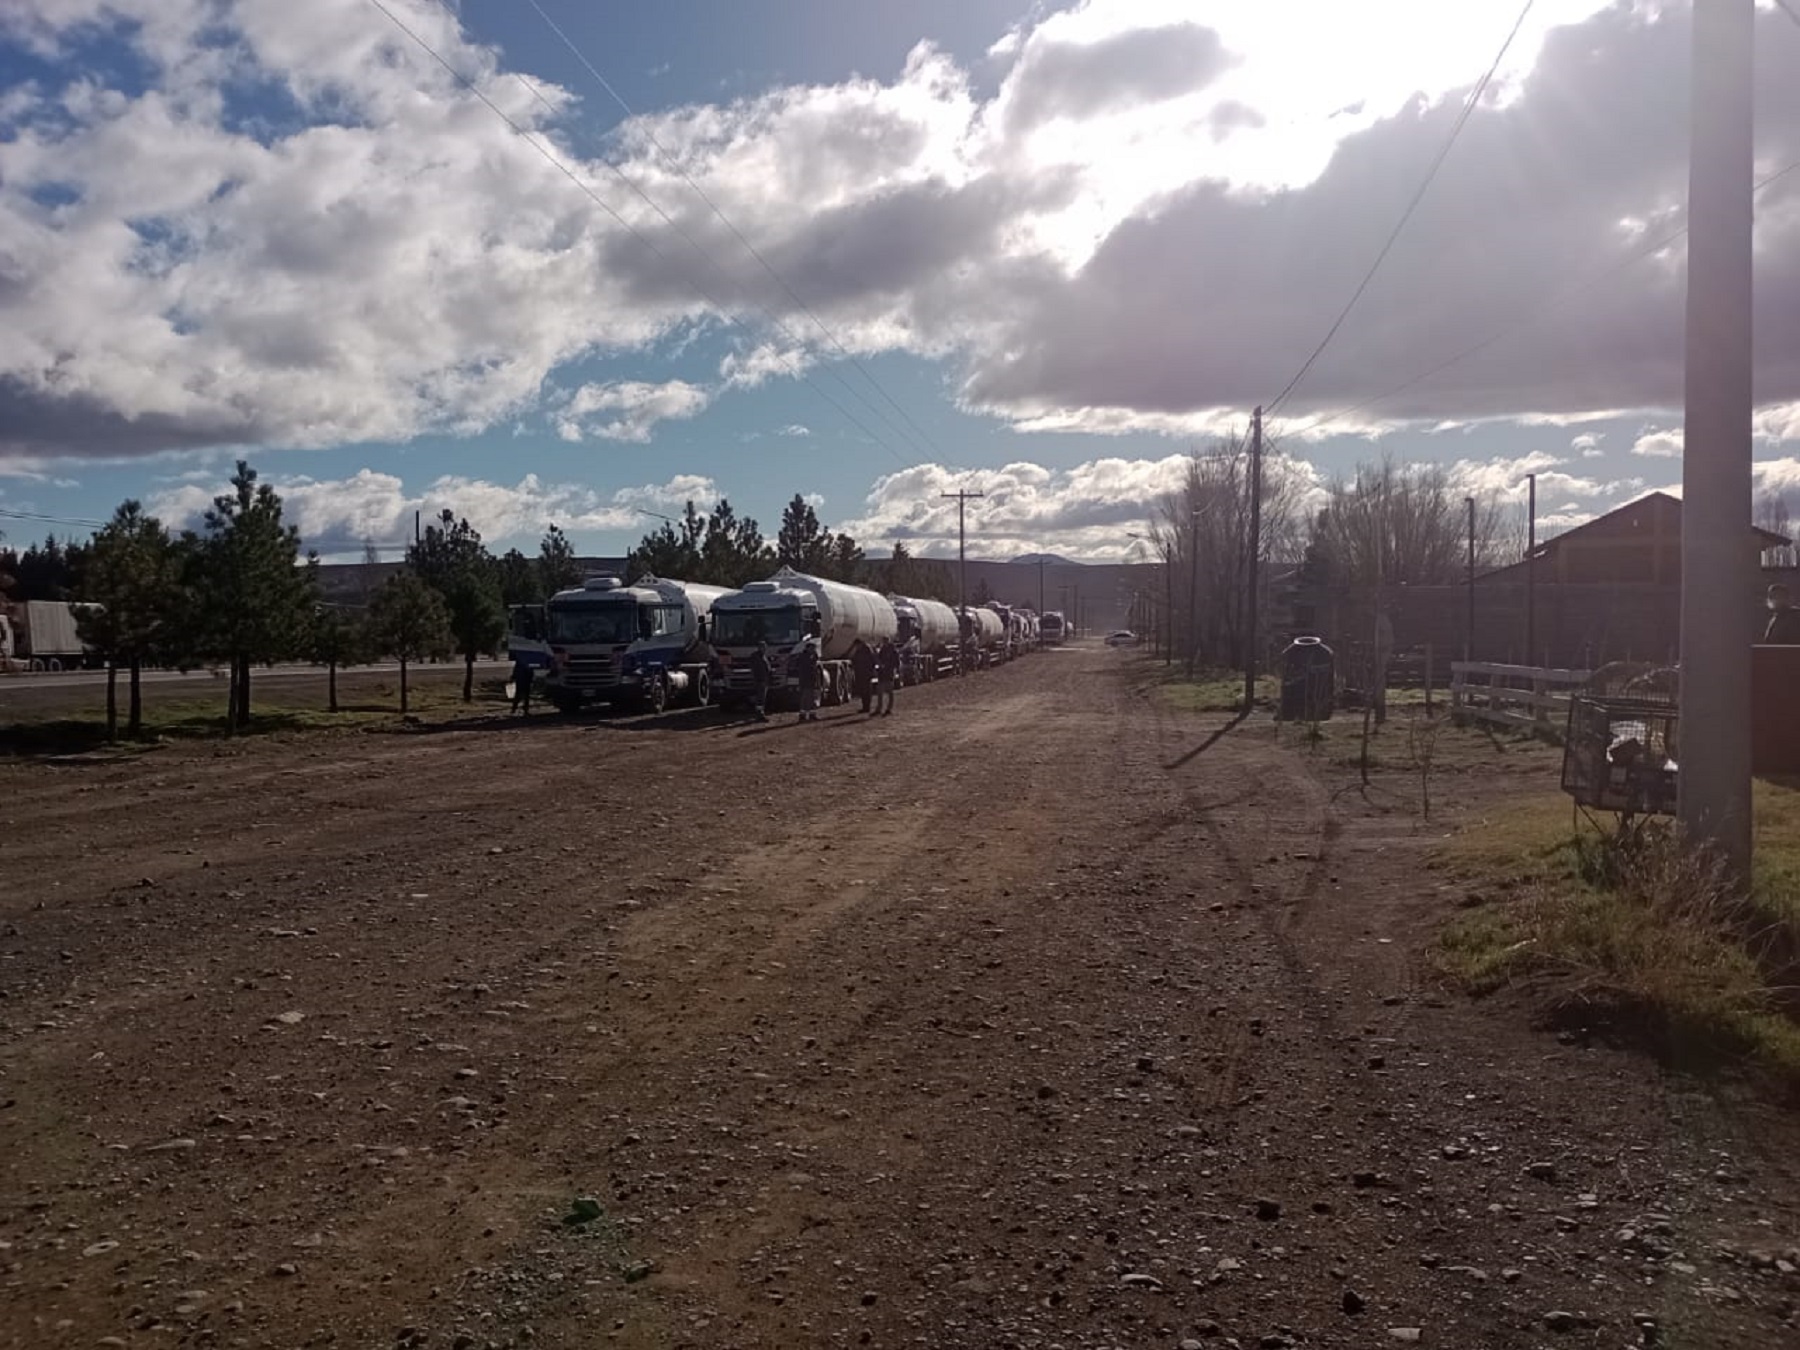 Camiones varados comenzaron a circular para Pino hachado, luego que se se reabriera el cruce internacional con Chile. Foto: Gentileza 